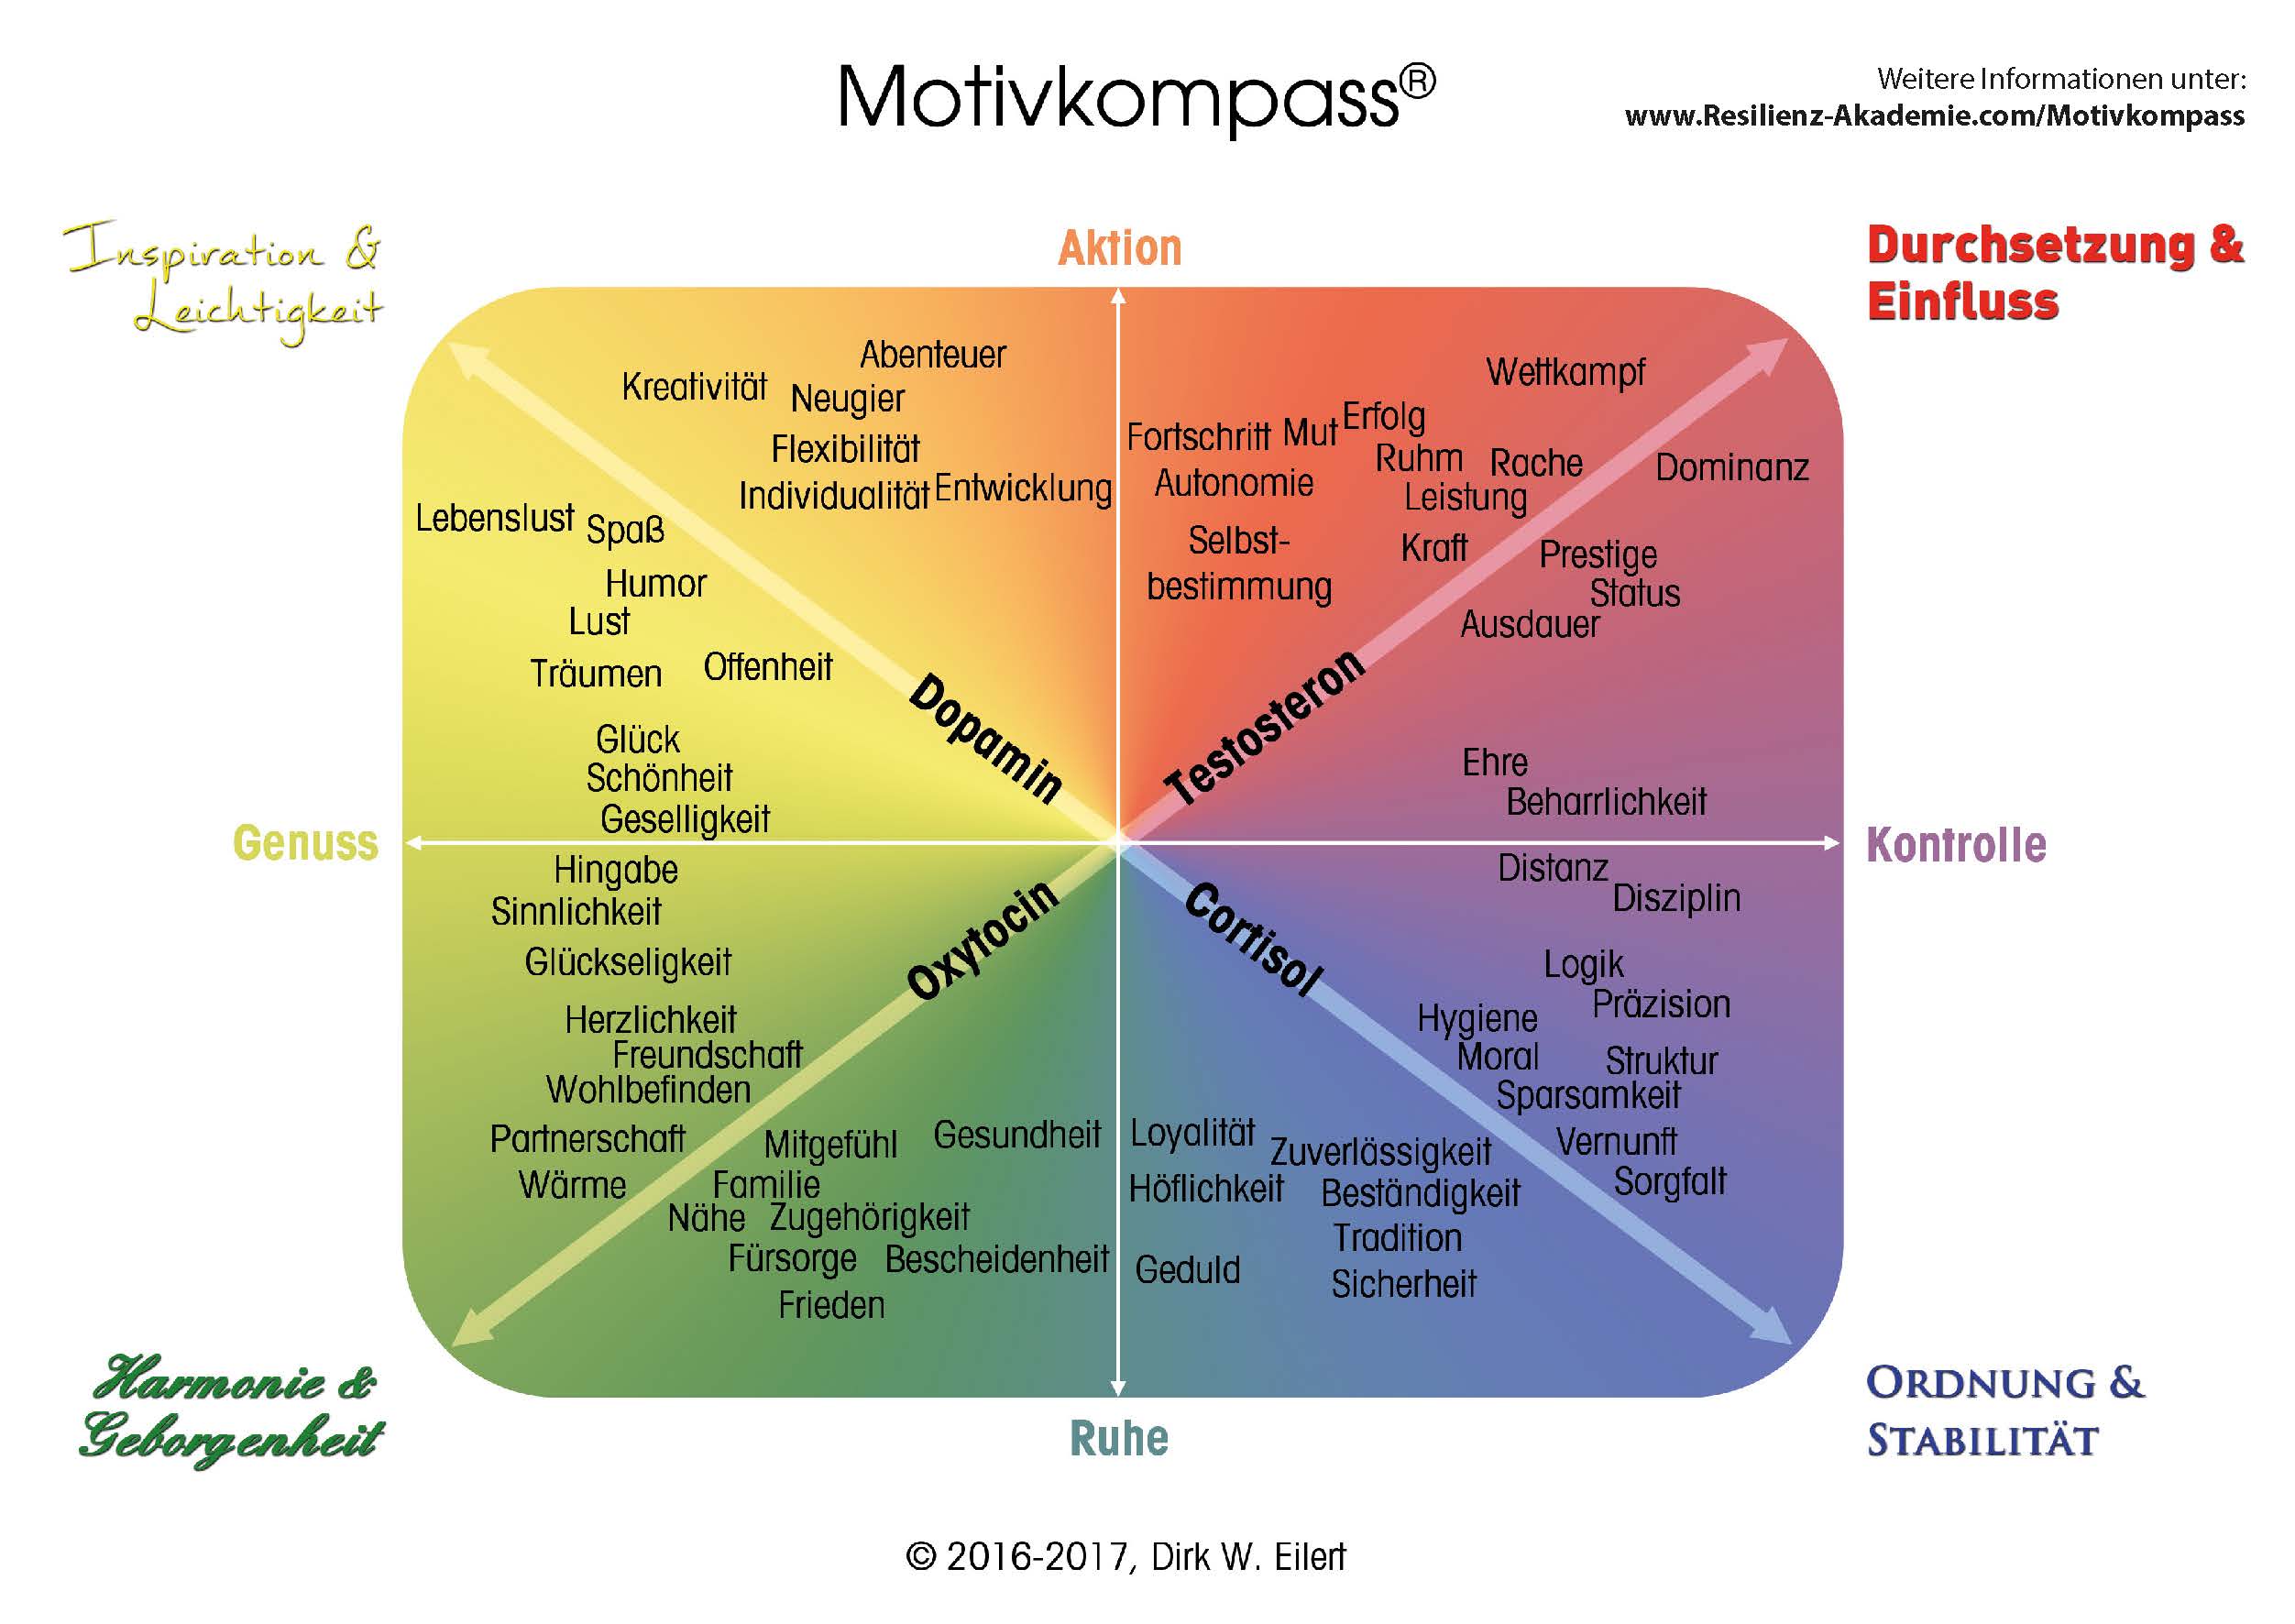 Motivkompass